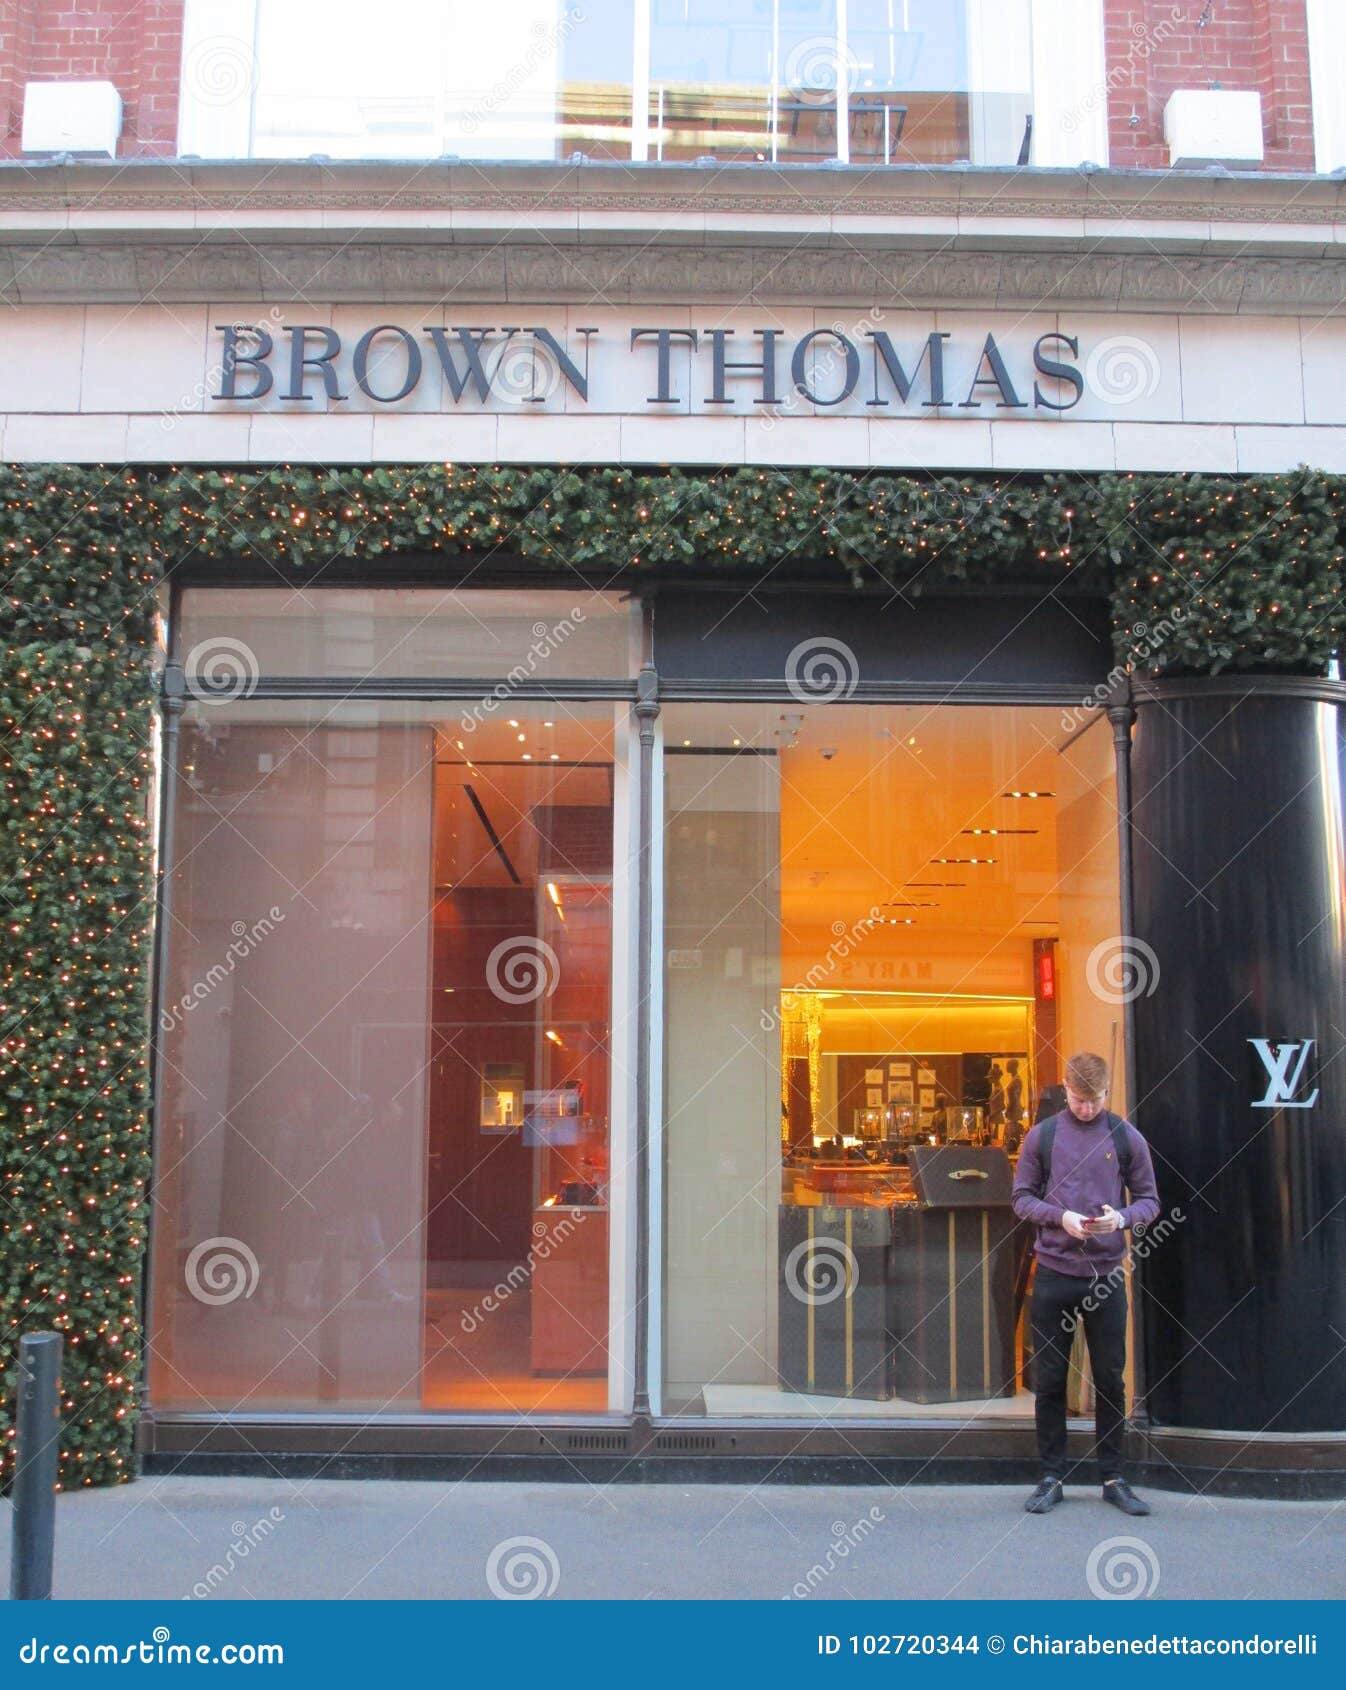 Louis Vuitton Dublin Brown Thomas in Dublin